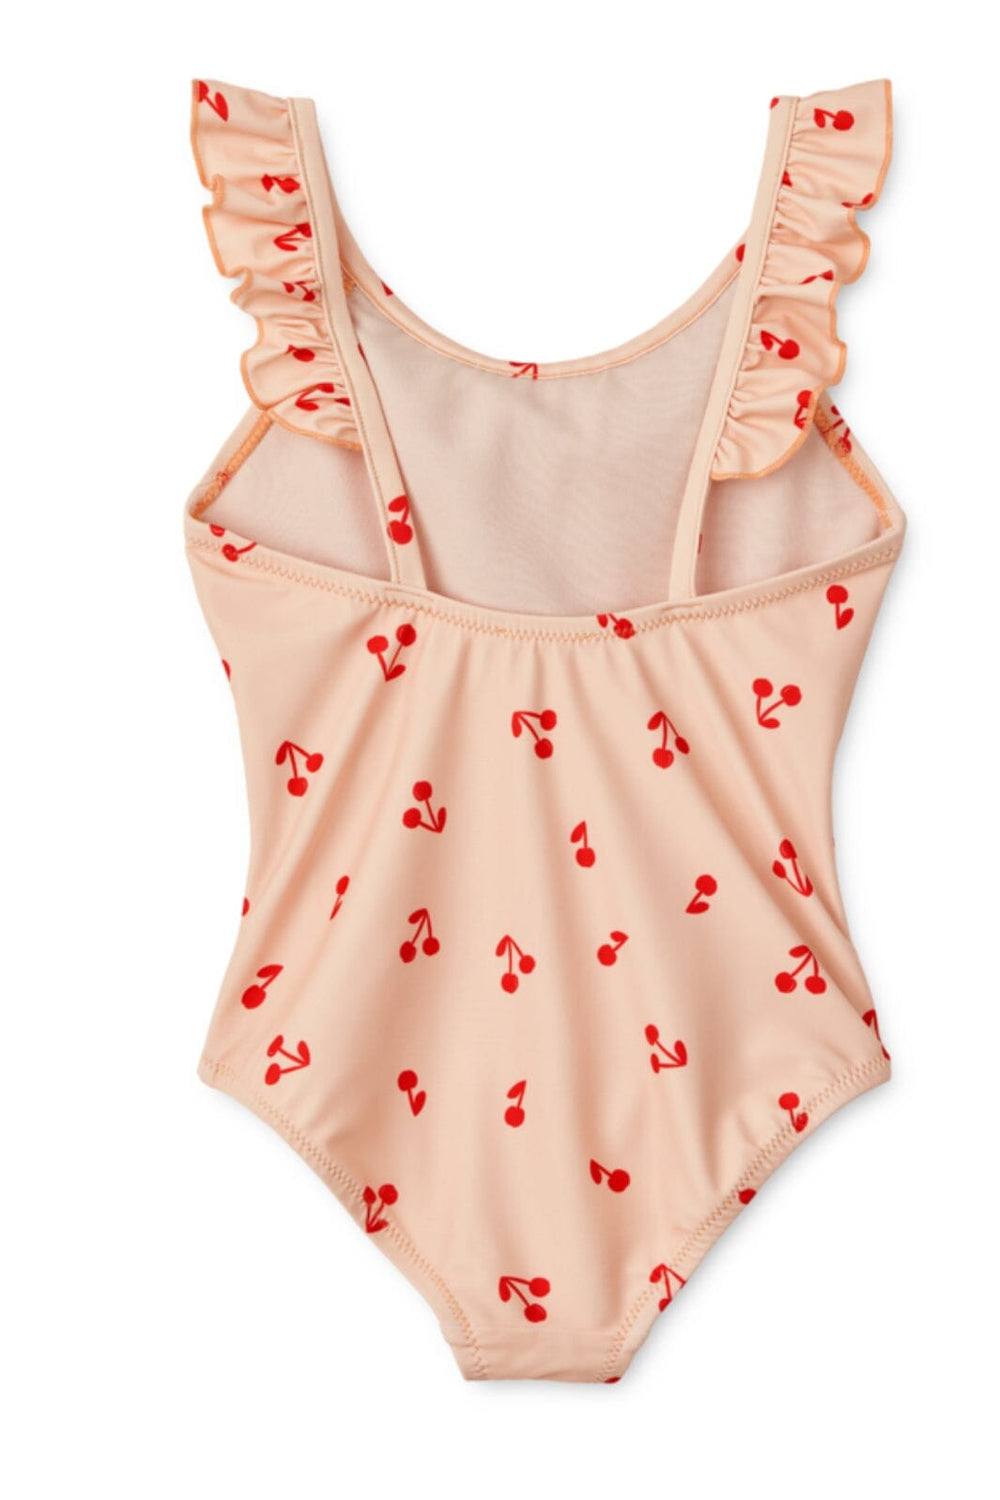 Liewood - Kallie Printed Swimsuit - Cherries / Apple Blossom Badedragter 